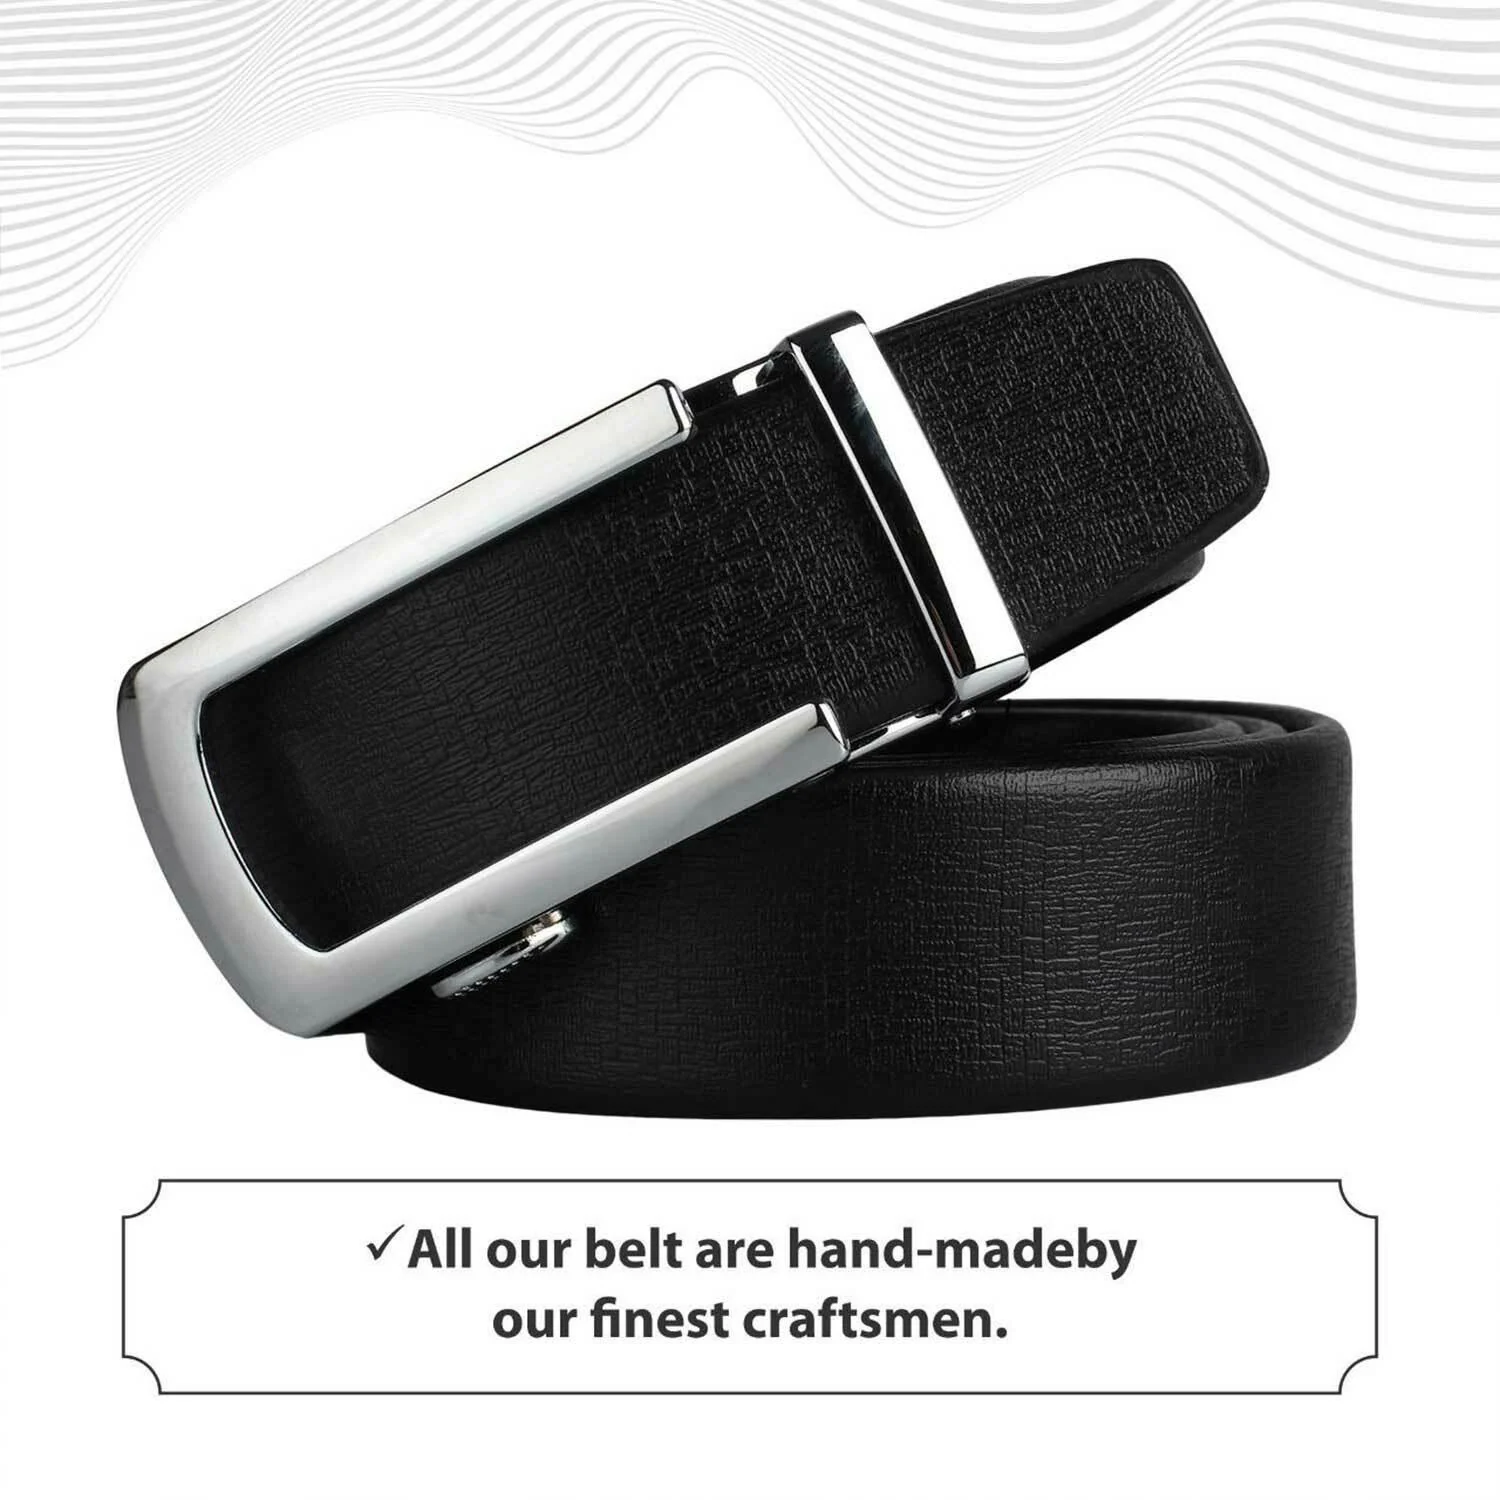 Belt with sliding buckle Men's ratchet belt Black leather belt With no holes Adjustable belts Men's slide belt Click belts Automatic buckle